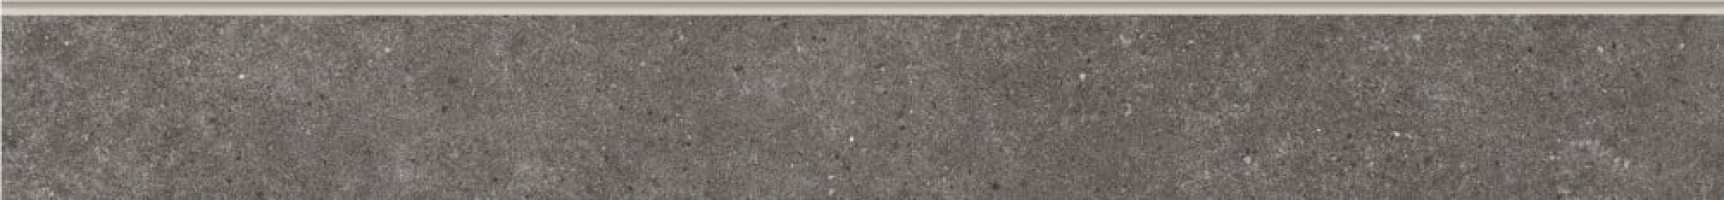 Плинтус Cersanit Lofthouse темно-серый 7x59.8 LS5A406